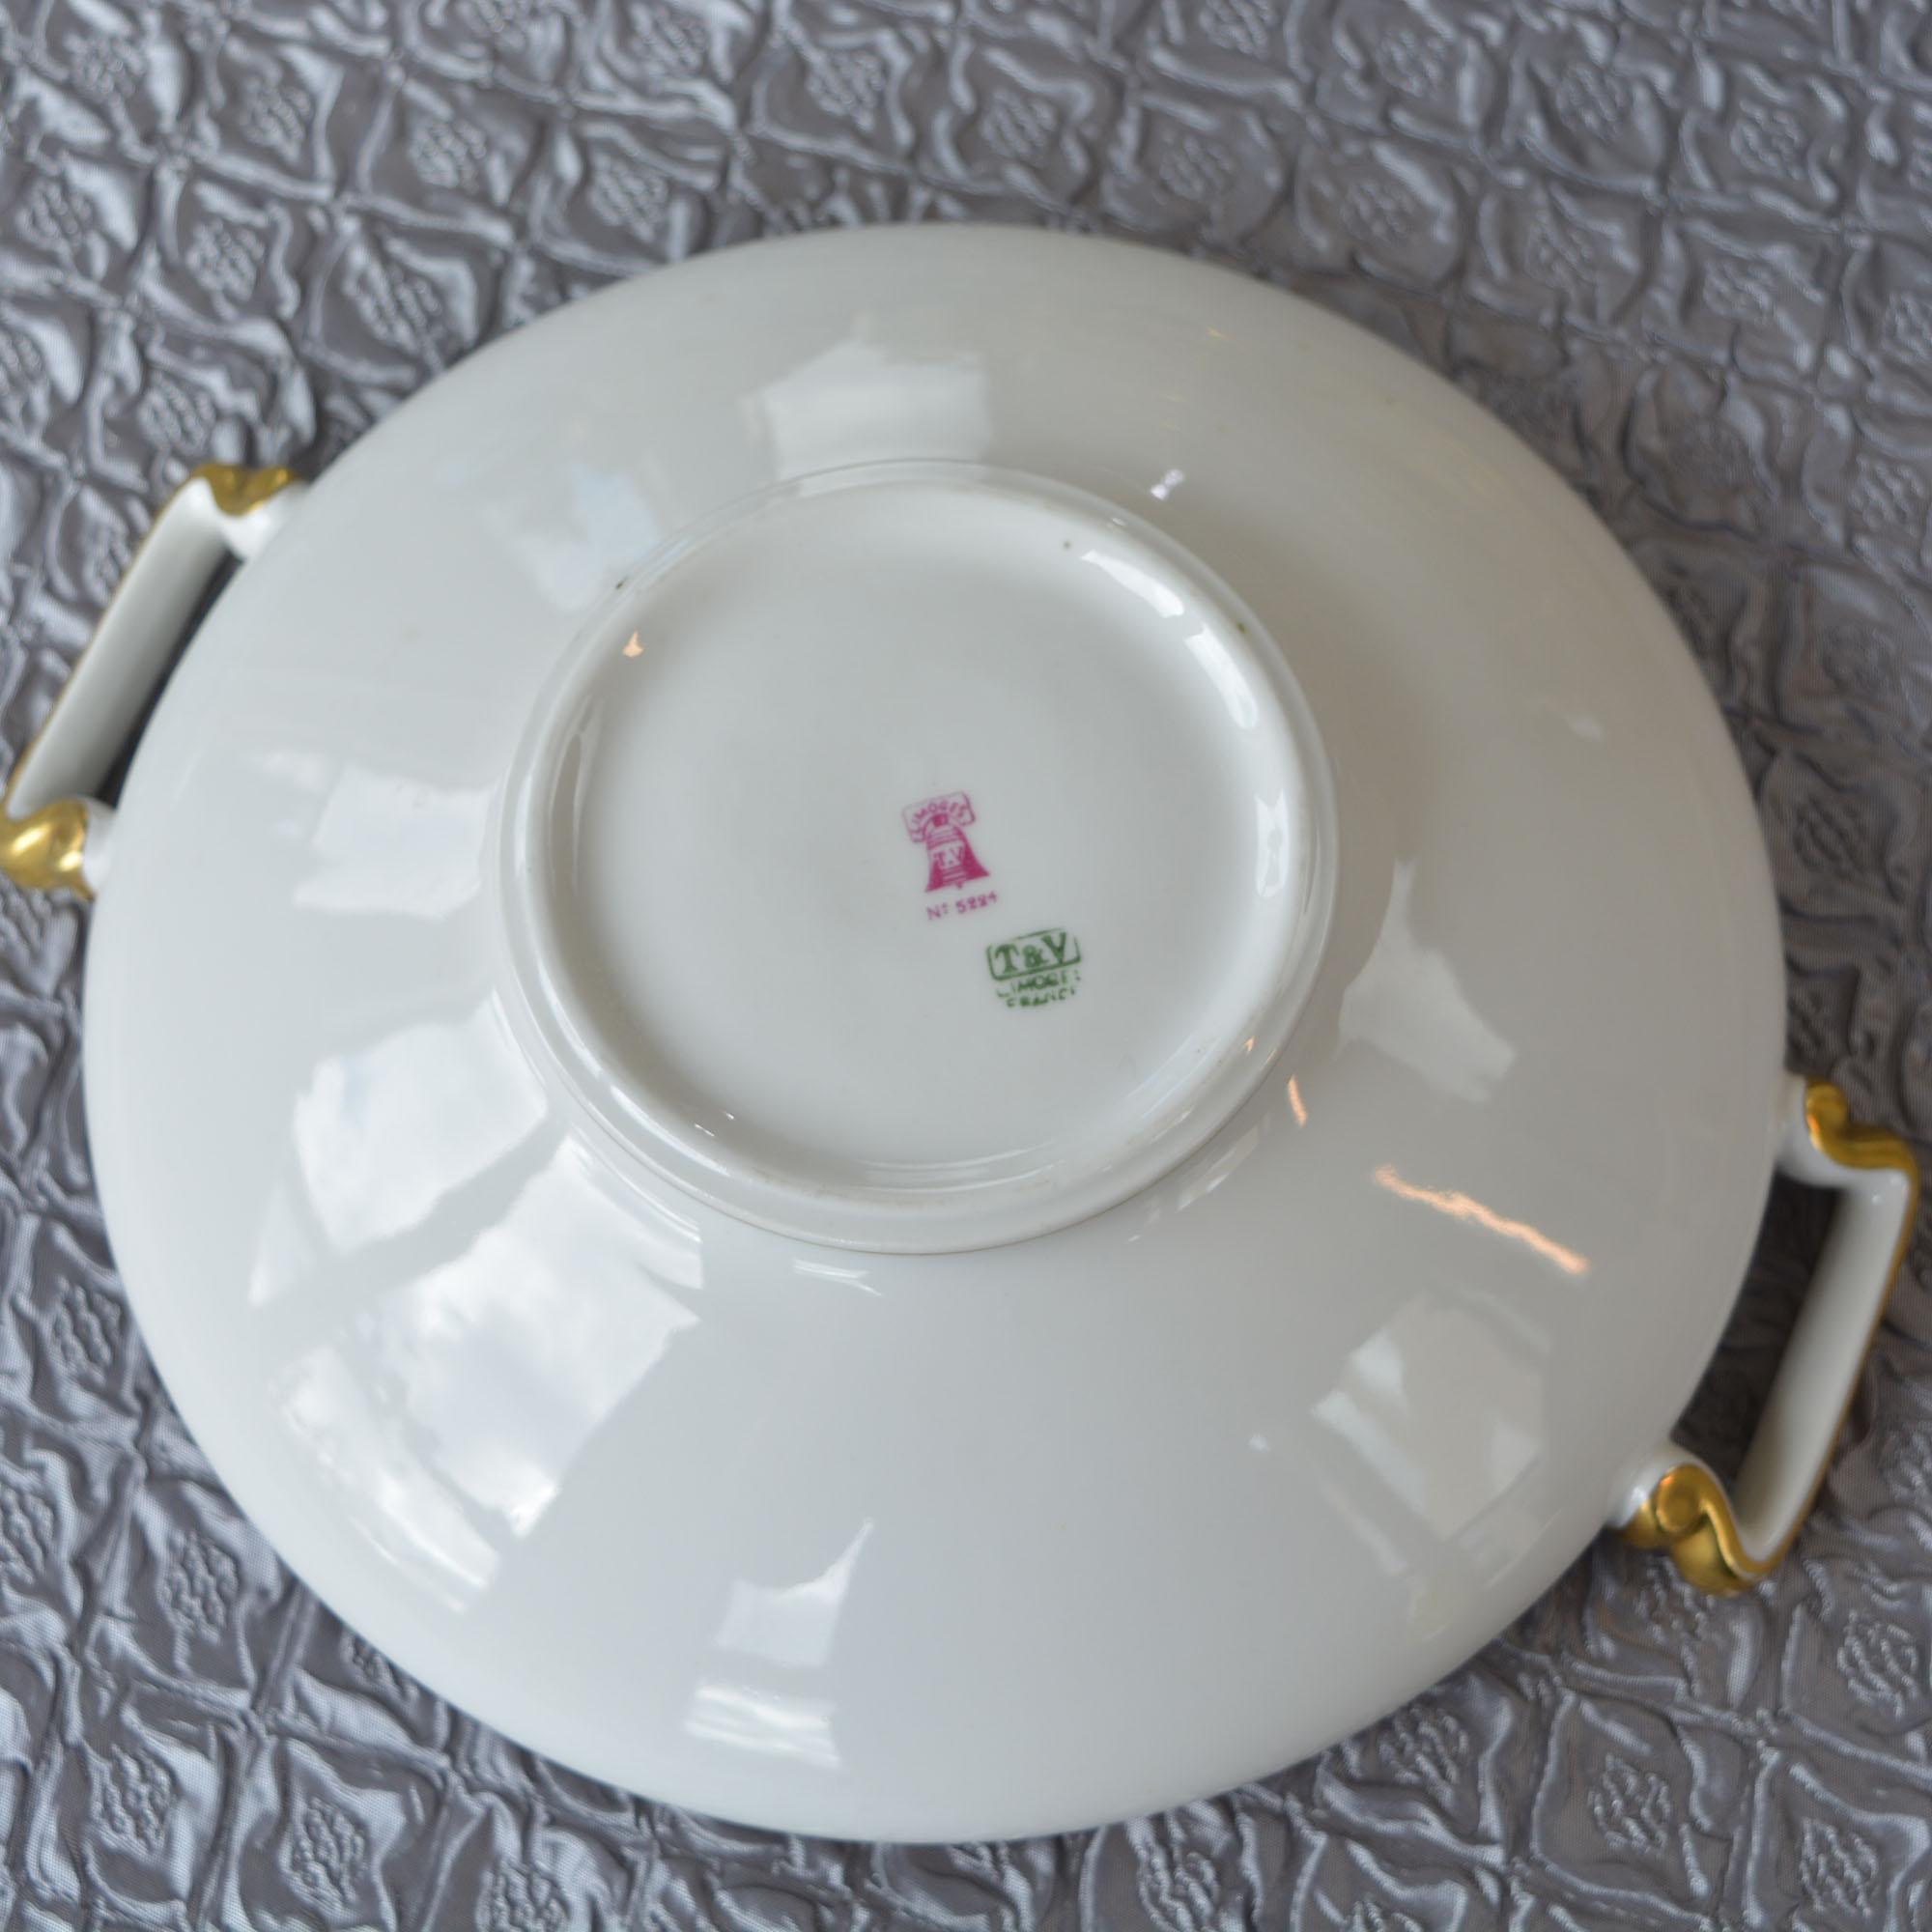 vogt china dinner plate set